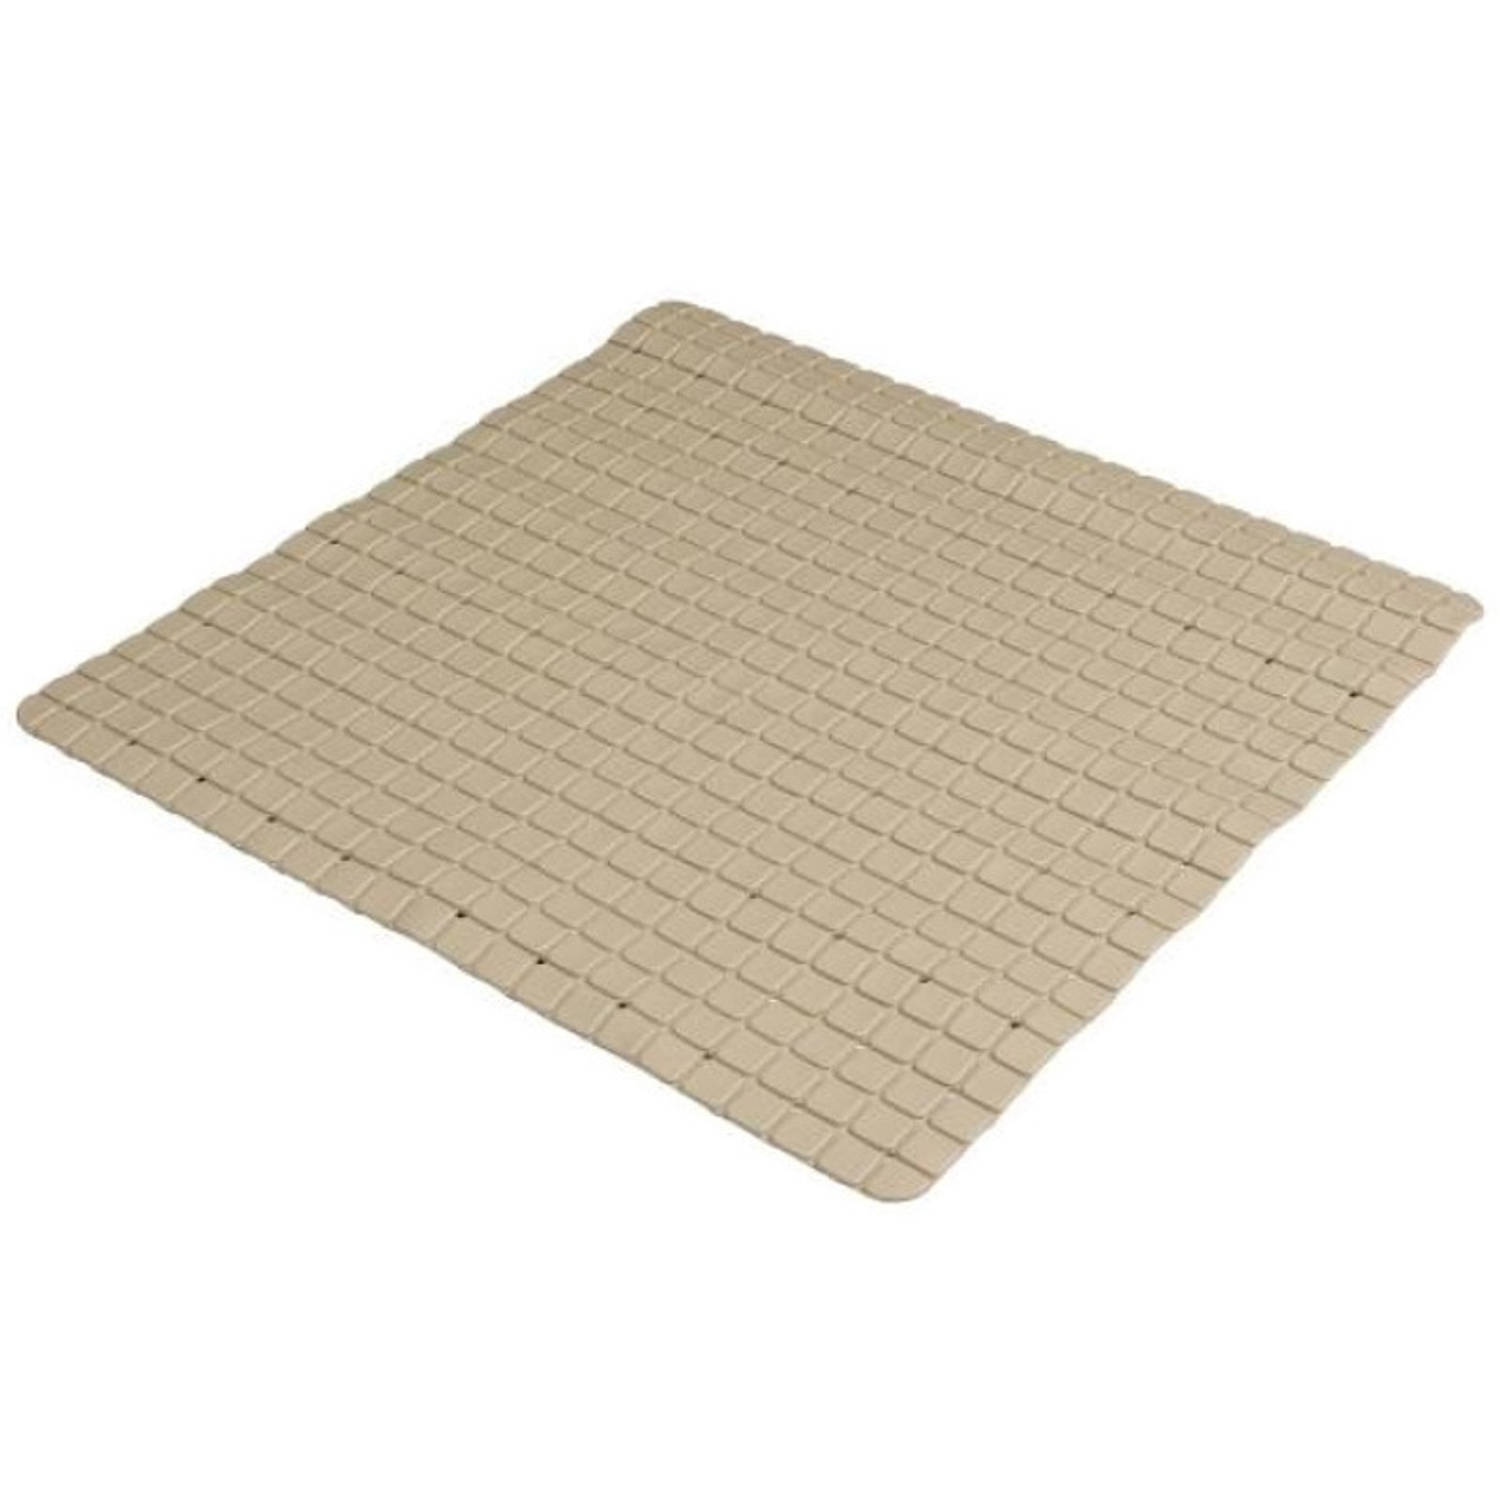 Urban Living Badkamer-douche anti slip mat rubber voor op de vloer beige 55 x 55 cm Badmatjes